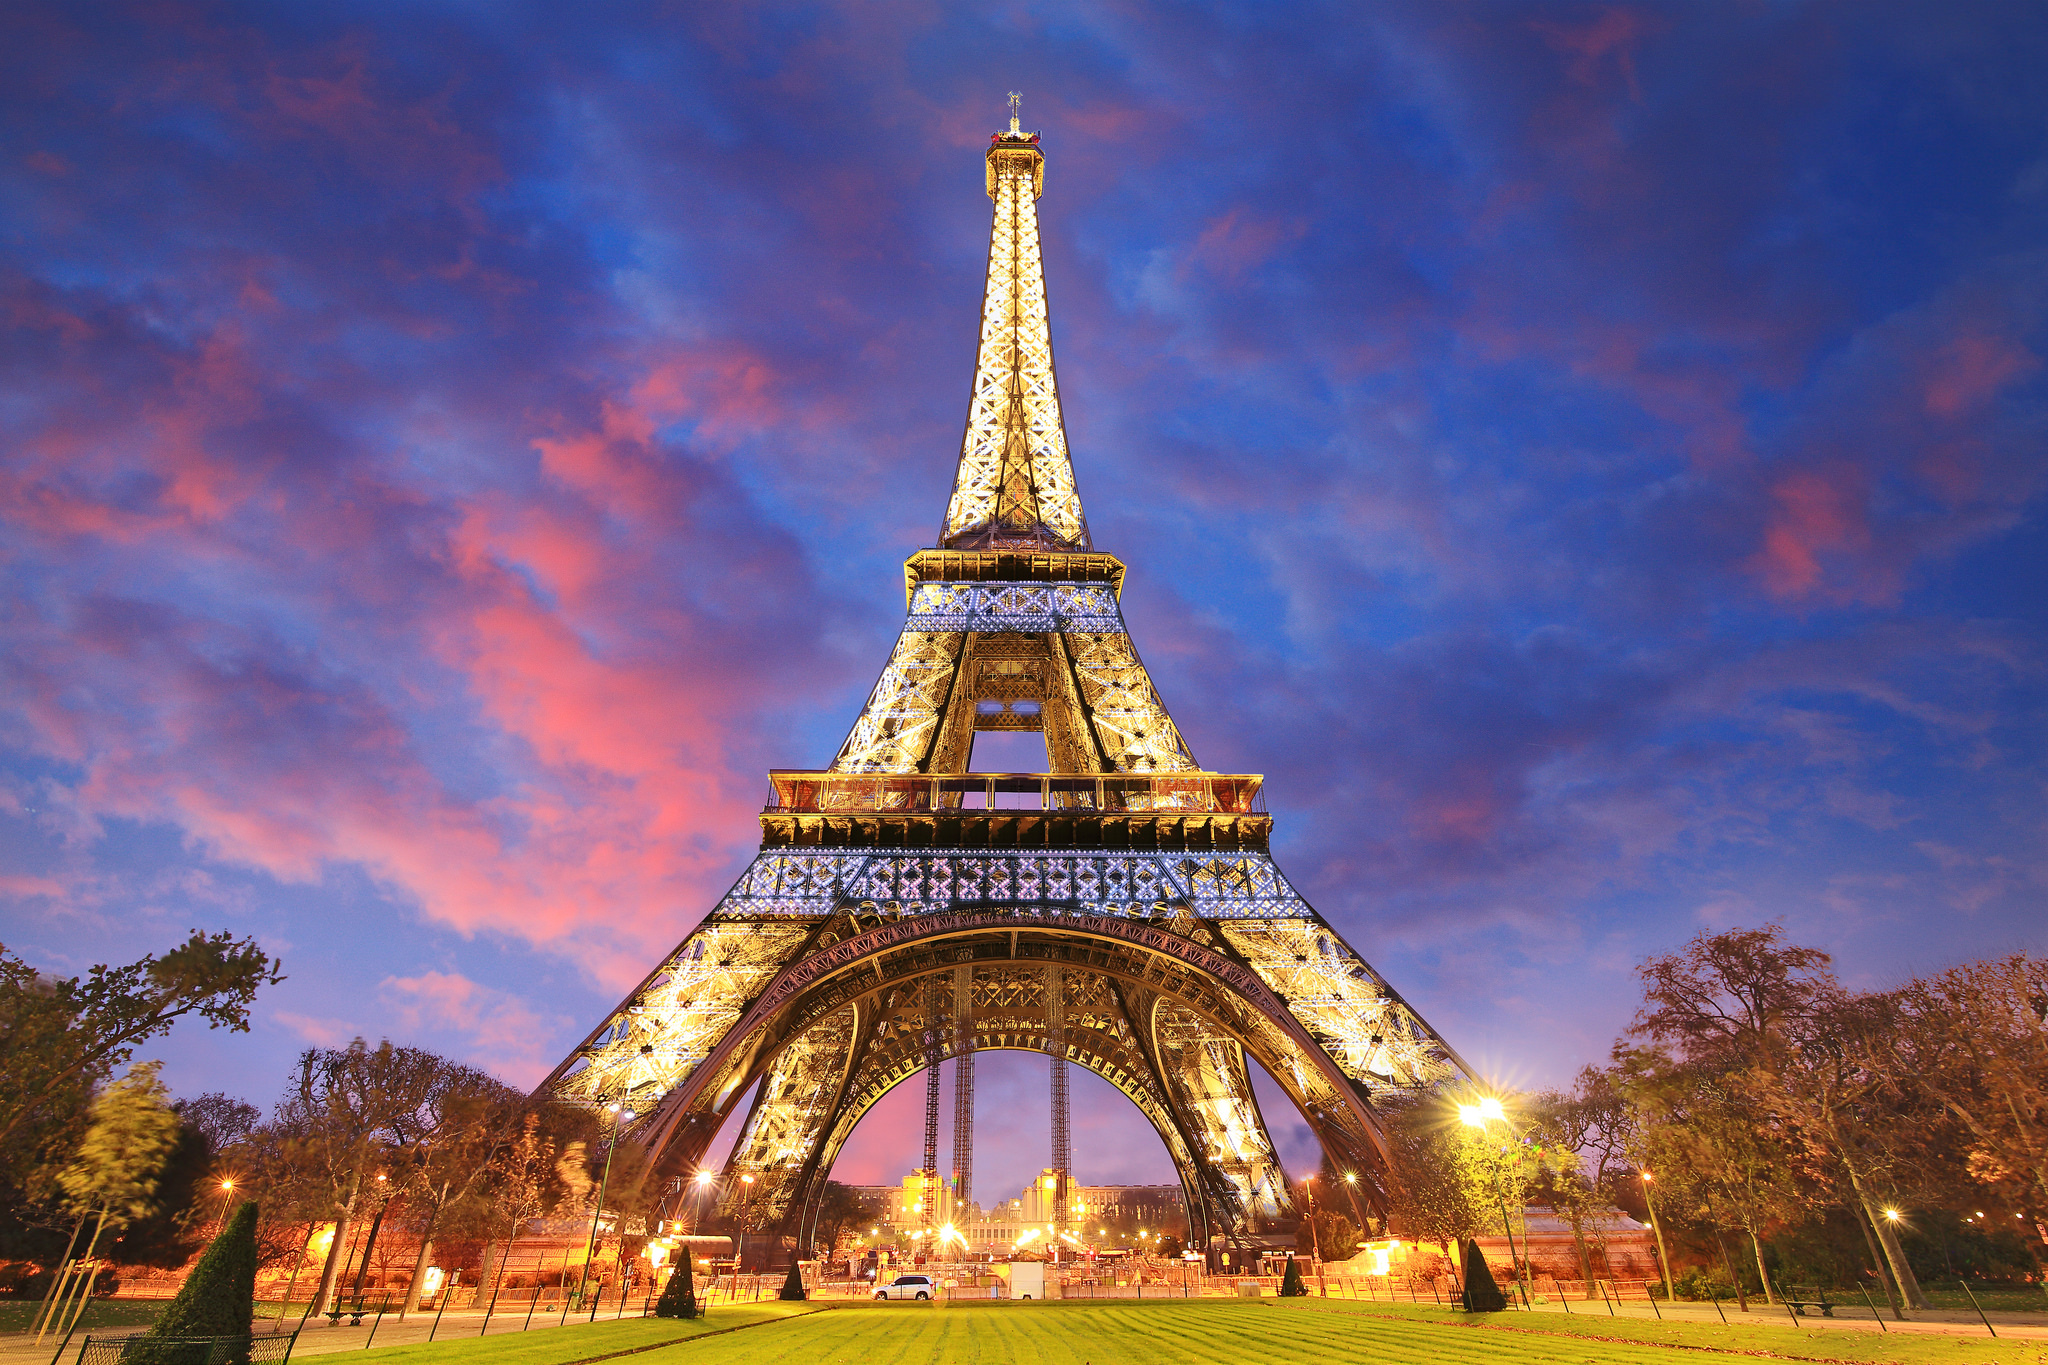 Tổng Hợp 50+ Hình Ảnh Tháp Eiffel Đẹp, Lộng Lấy, Hùng Vĩ Nhất 68